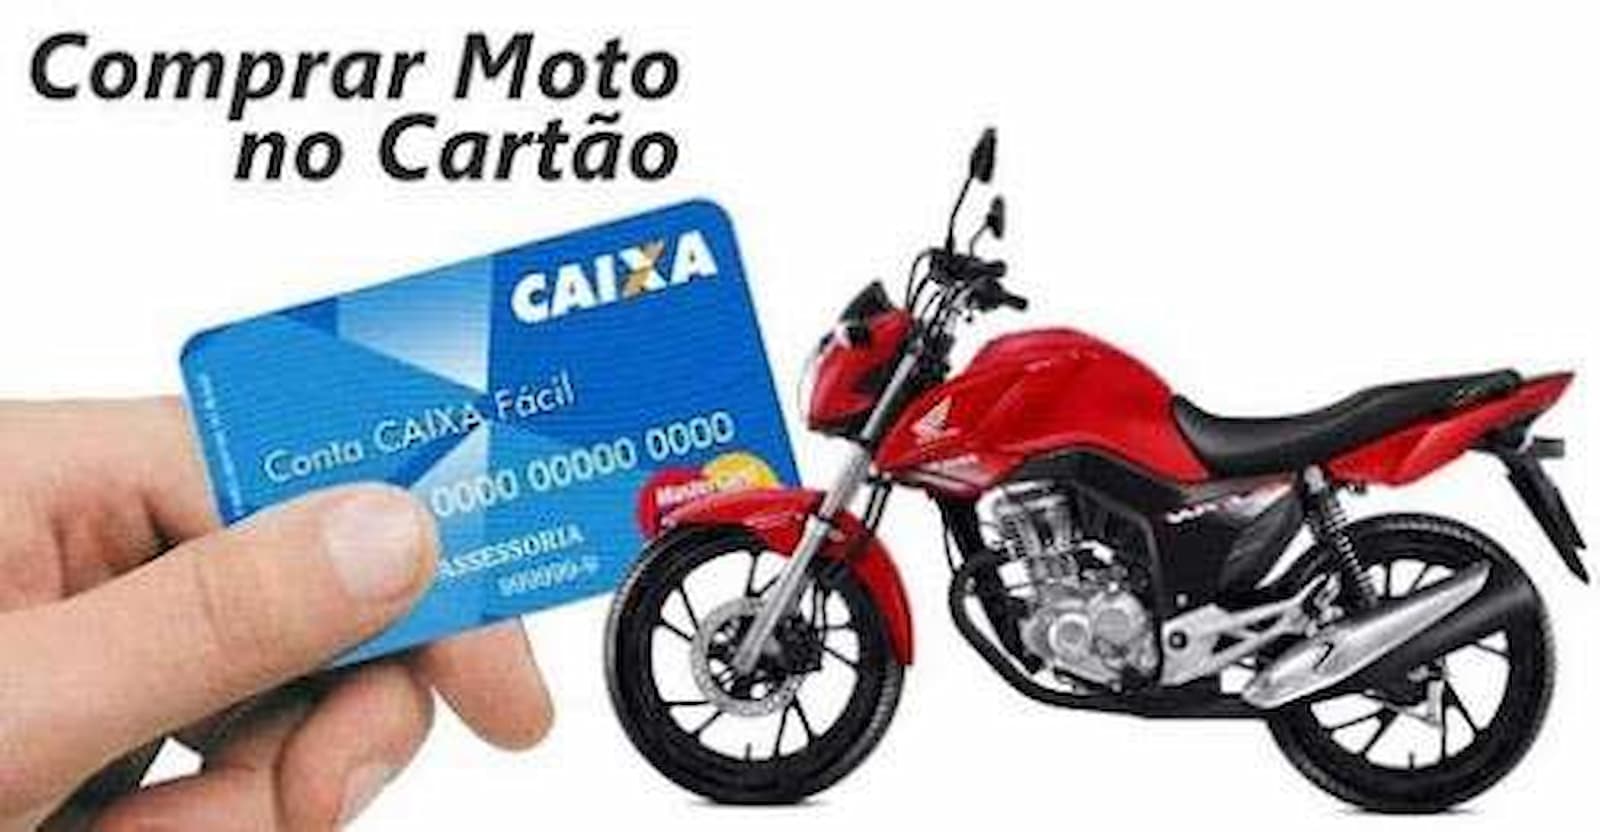 Comprar Moto no Cartão de Crédito